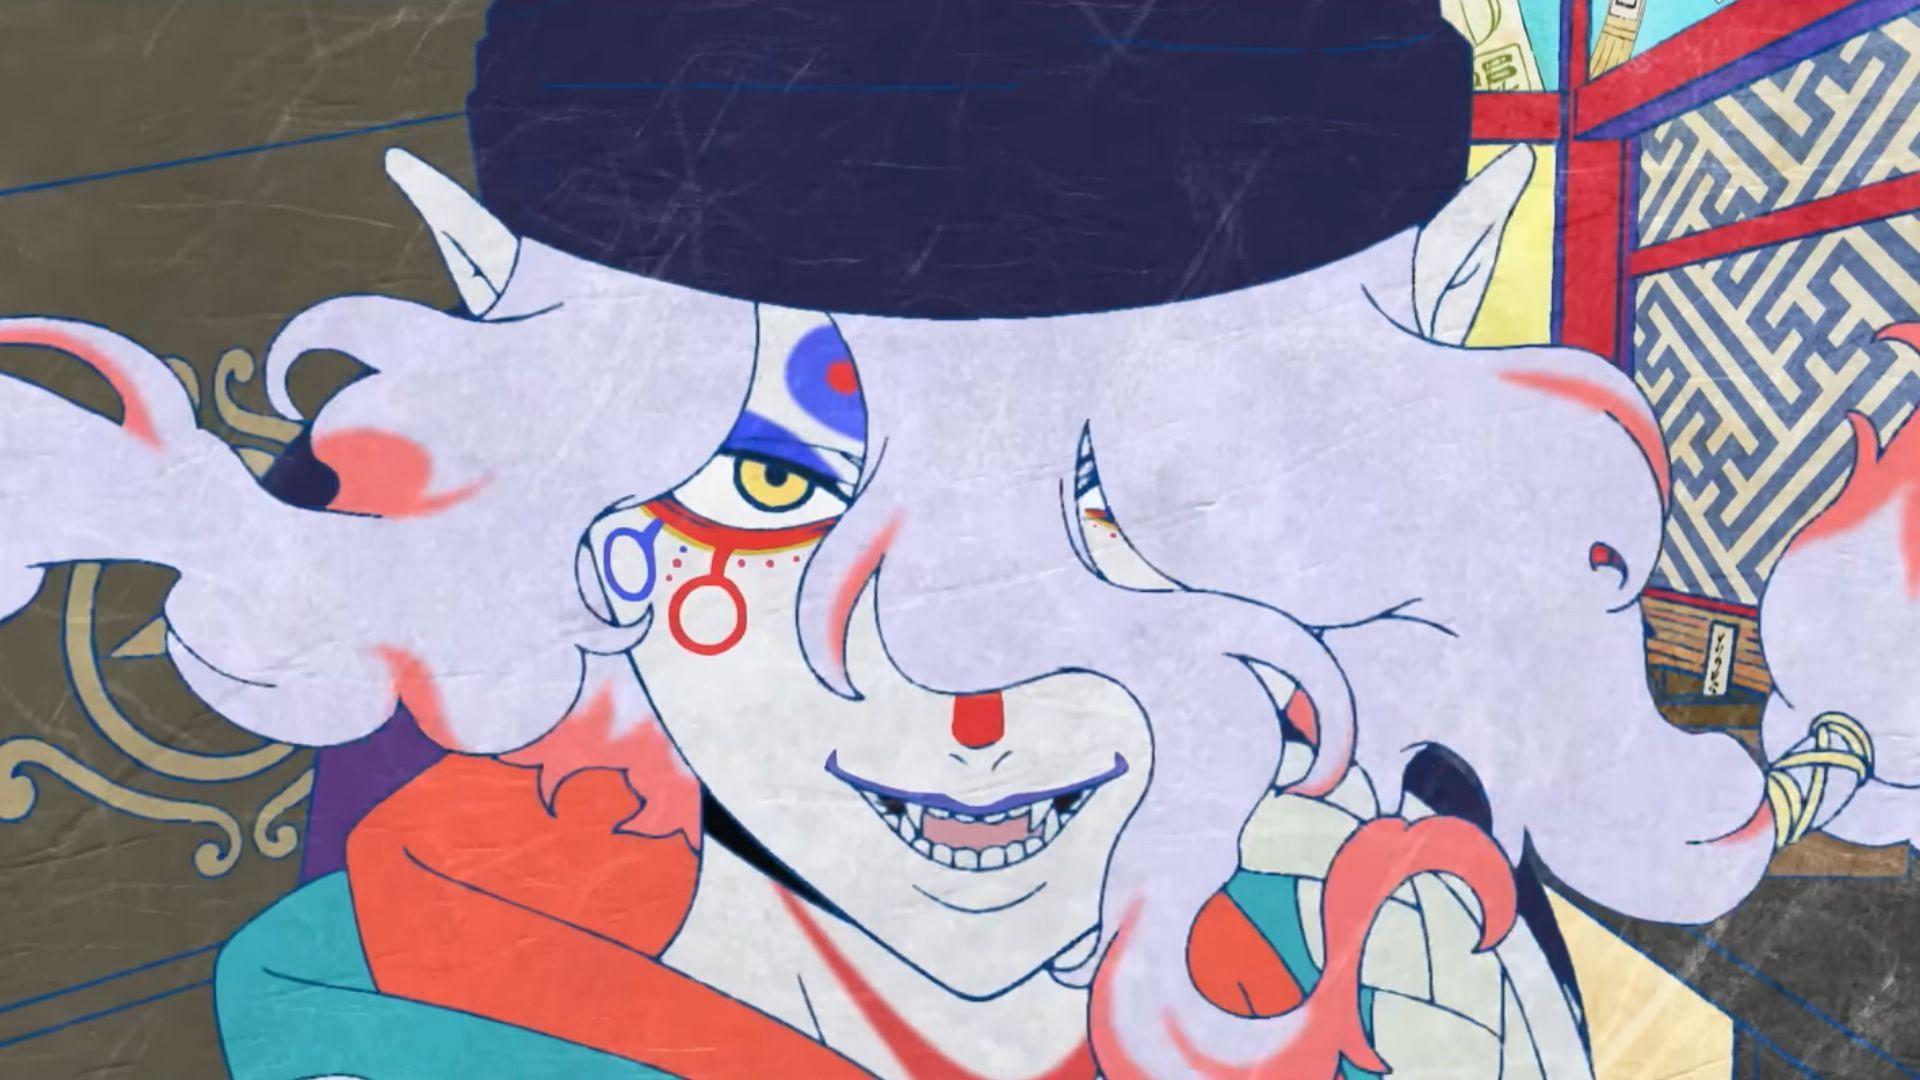 The Medicine Seller as seen in the Mononoke anime film teaser trailer 